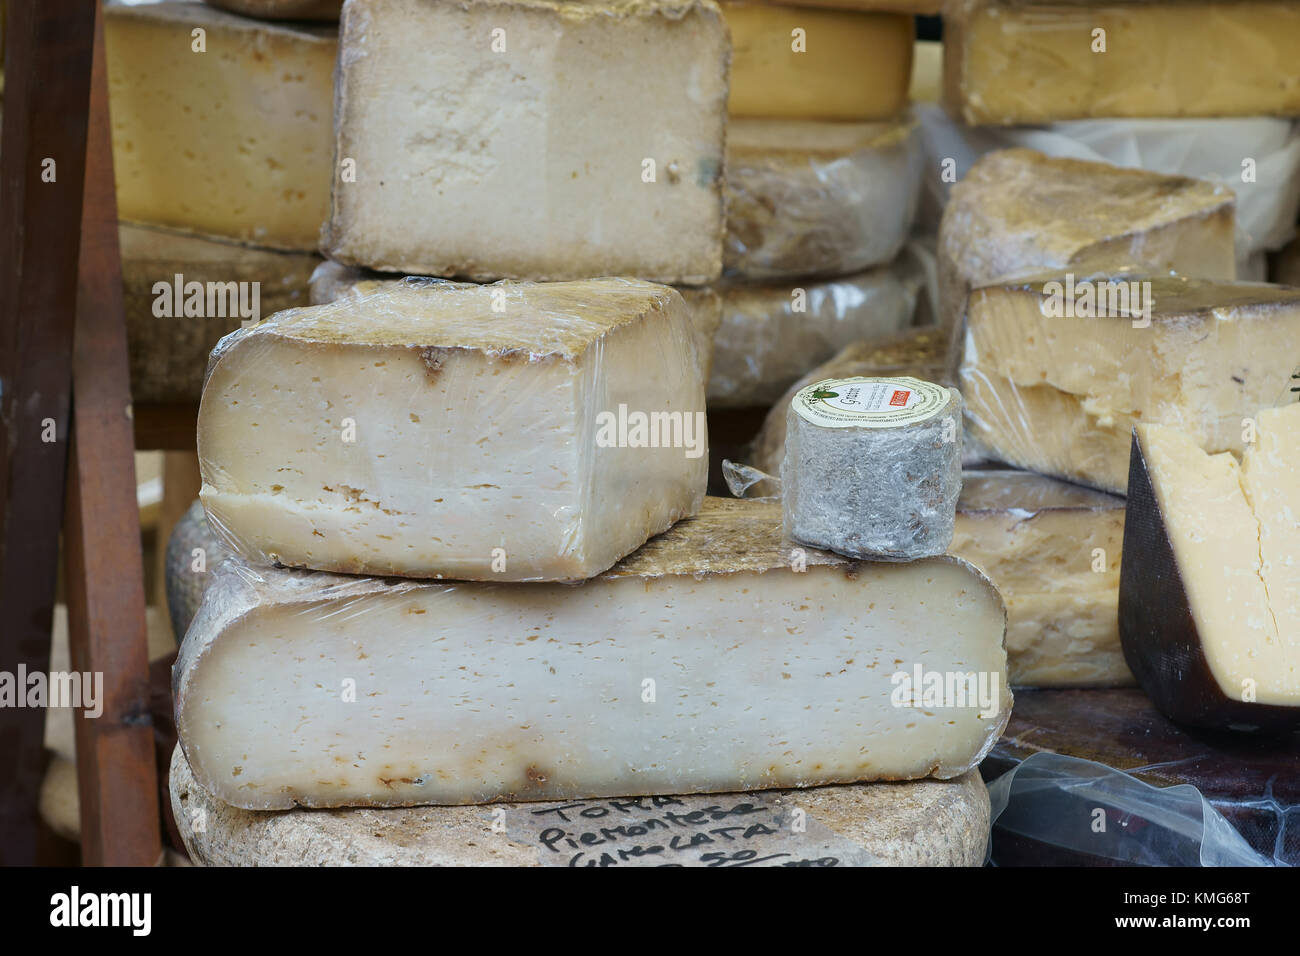 Italian aged cheese, Pecorino toscano in Siena, Italy Stock Photo